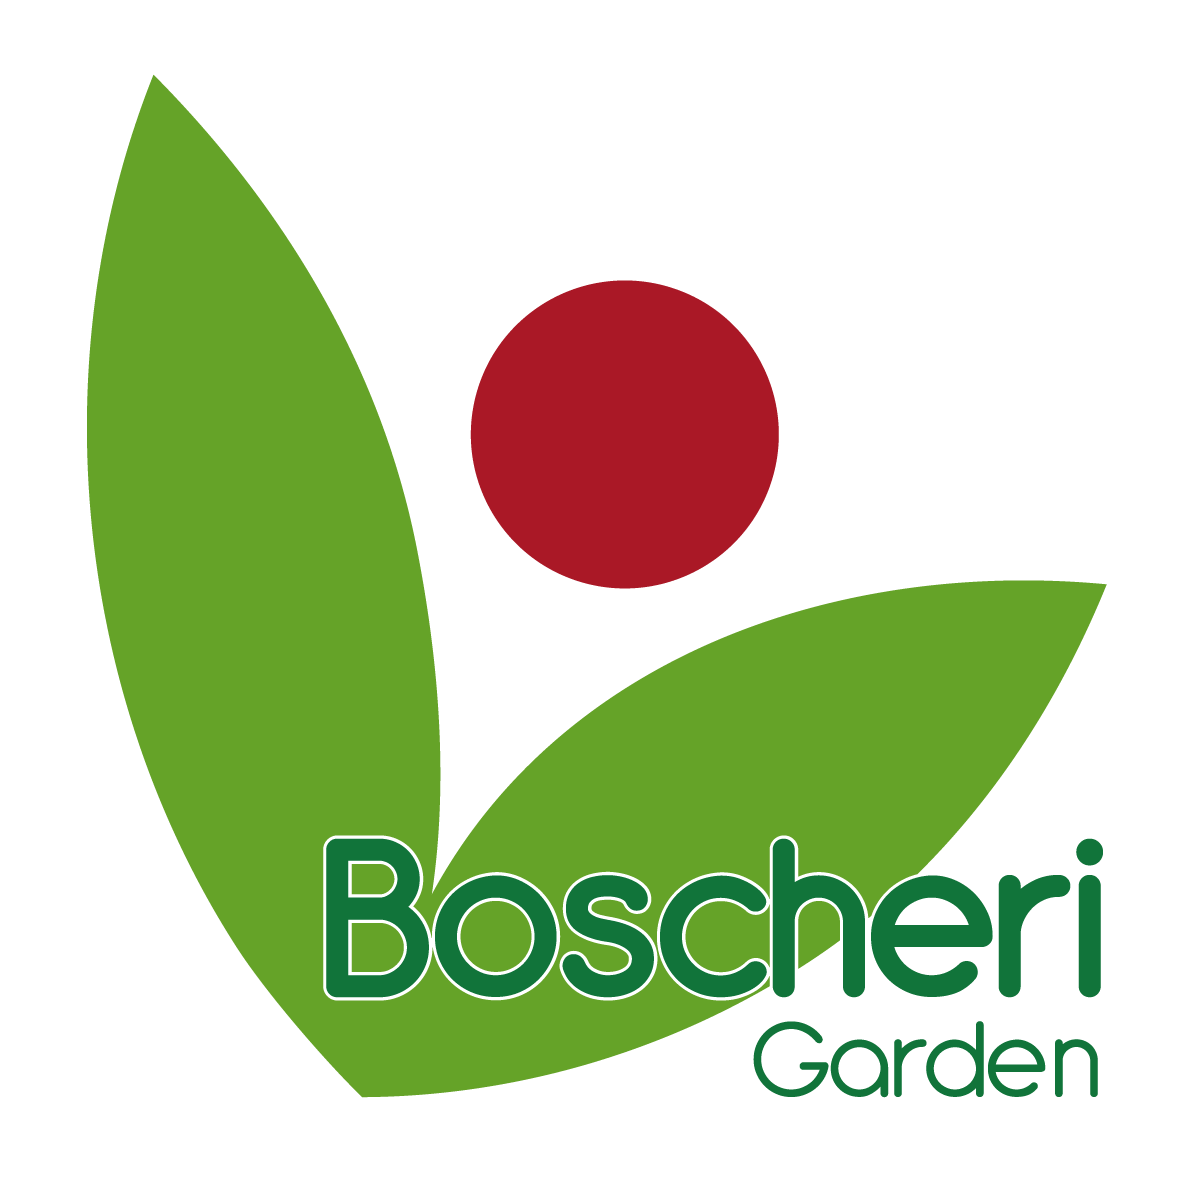 Garden Boscheri